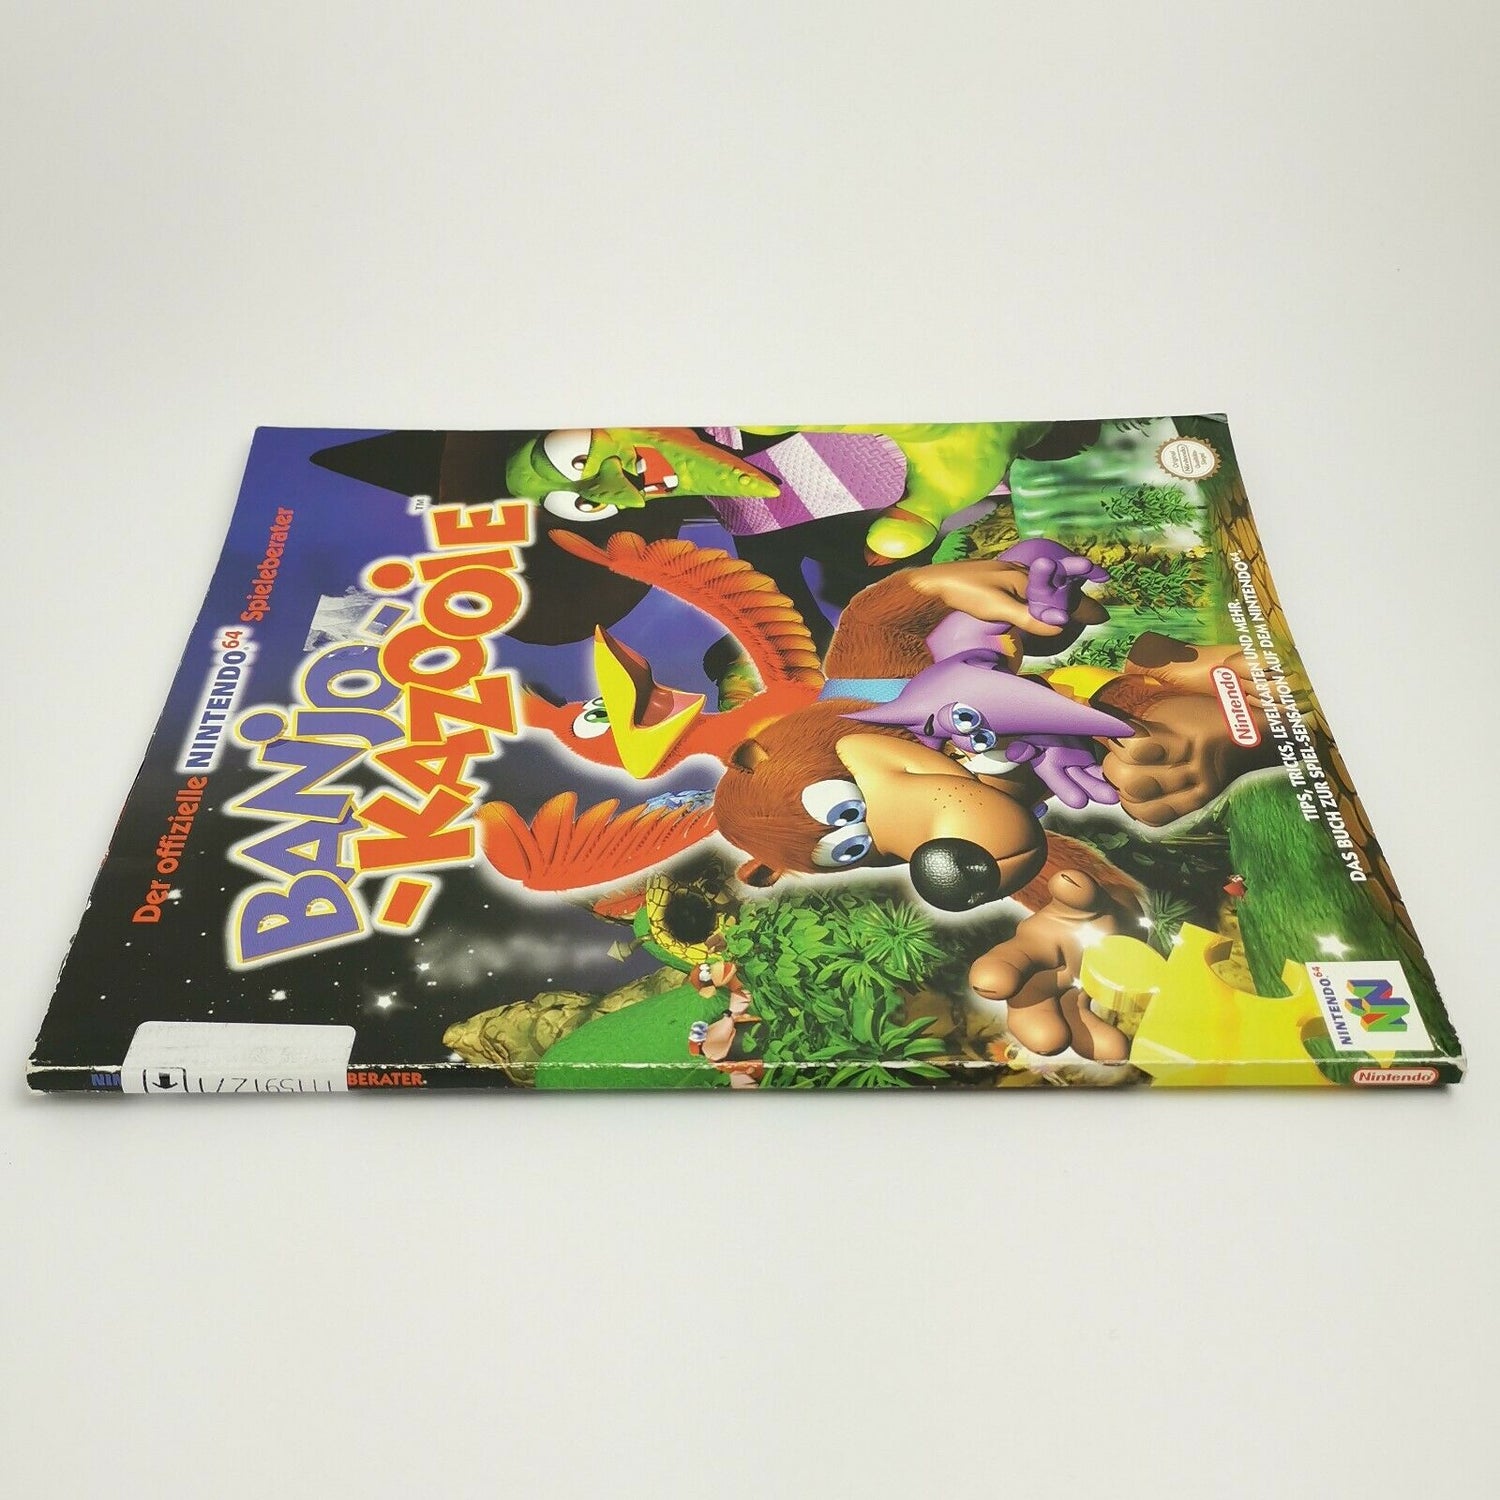 Der offizielle Nintendo 64 Spieleberater Banjo Kazooie | N64 | Lösungsbuch Guide